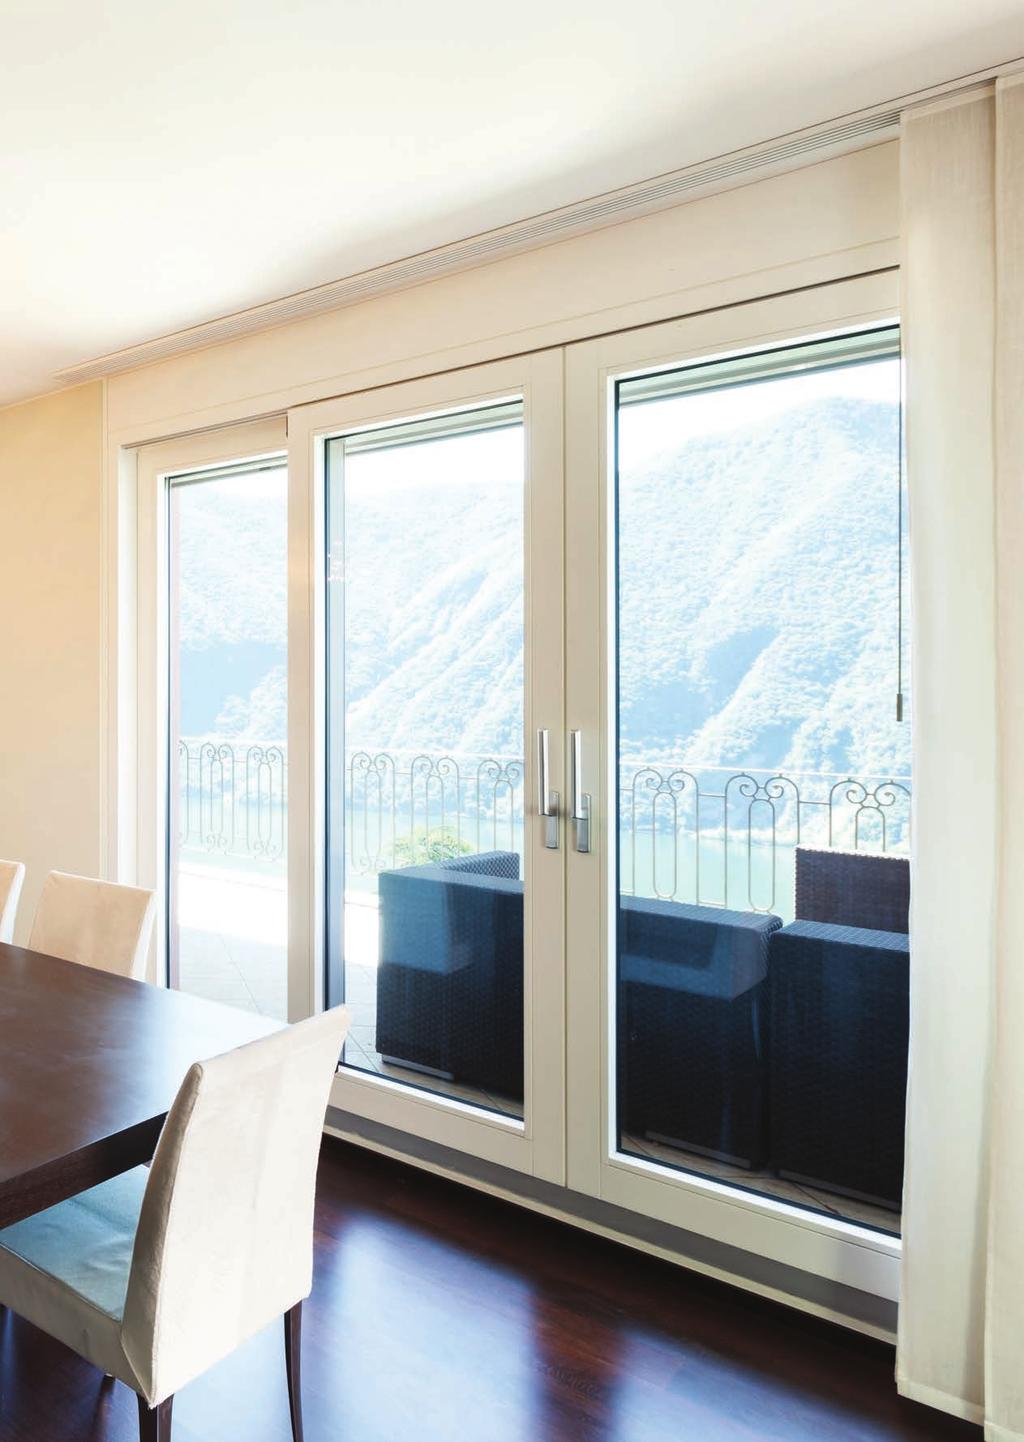 Okna ELEMENTY OKUĆ SPRAWDŹ I PORÓWNAJ FUNKCJE OKUĆ Concept Concept Plus Comfort Select TiltFirst MIKROWENTYLACJA Pozwala na delikatnie rozszczelnia okna i poprawę wymiany powietrza GRZYBKI